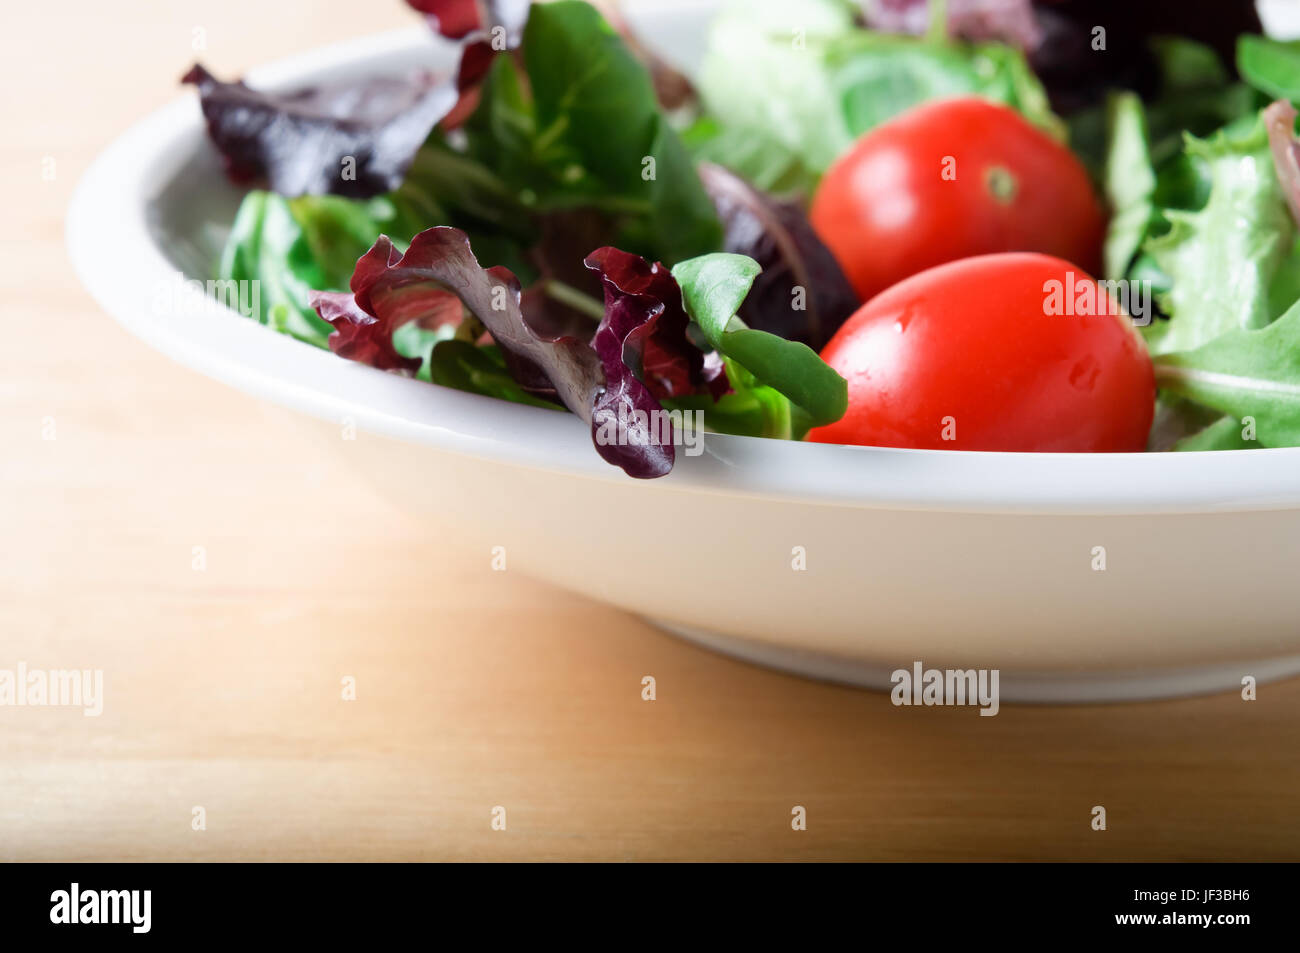 Eine weiße Schüssel mit Salat, einschließlich roter Kopfsalat, Rucola und Tomaten auf einem Leuchttisch aus Holz.  Querformat (horizontale). Stockfoto